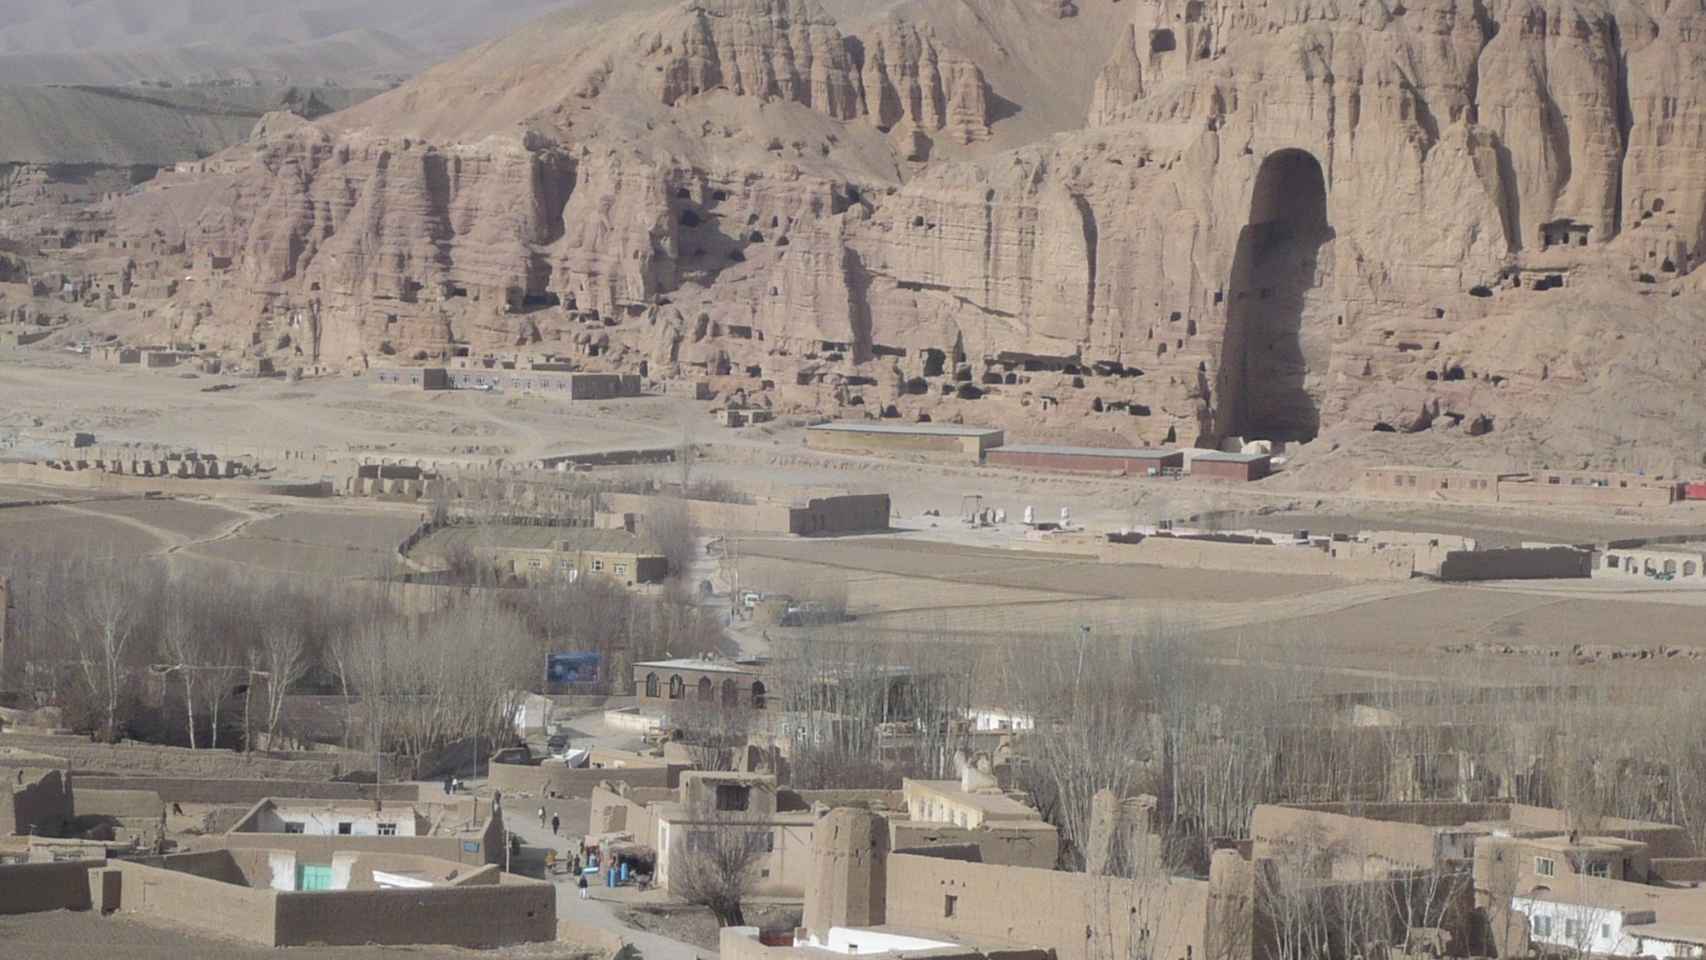 Vestigios arqueológicos en el Valle de Bamiyán, destruidos por el régimen talibán